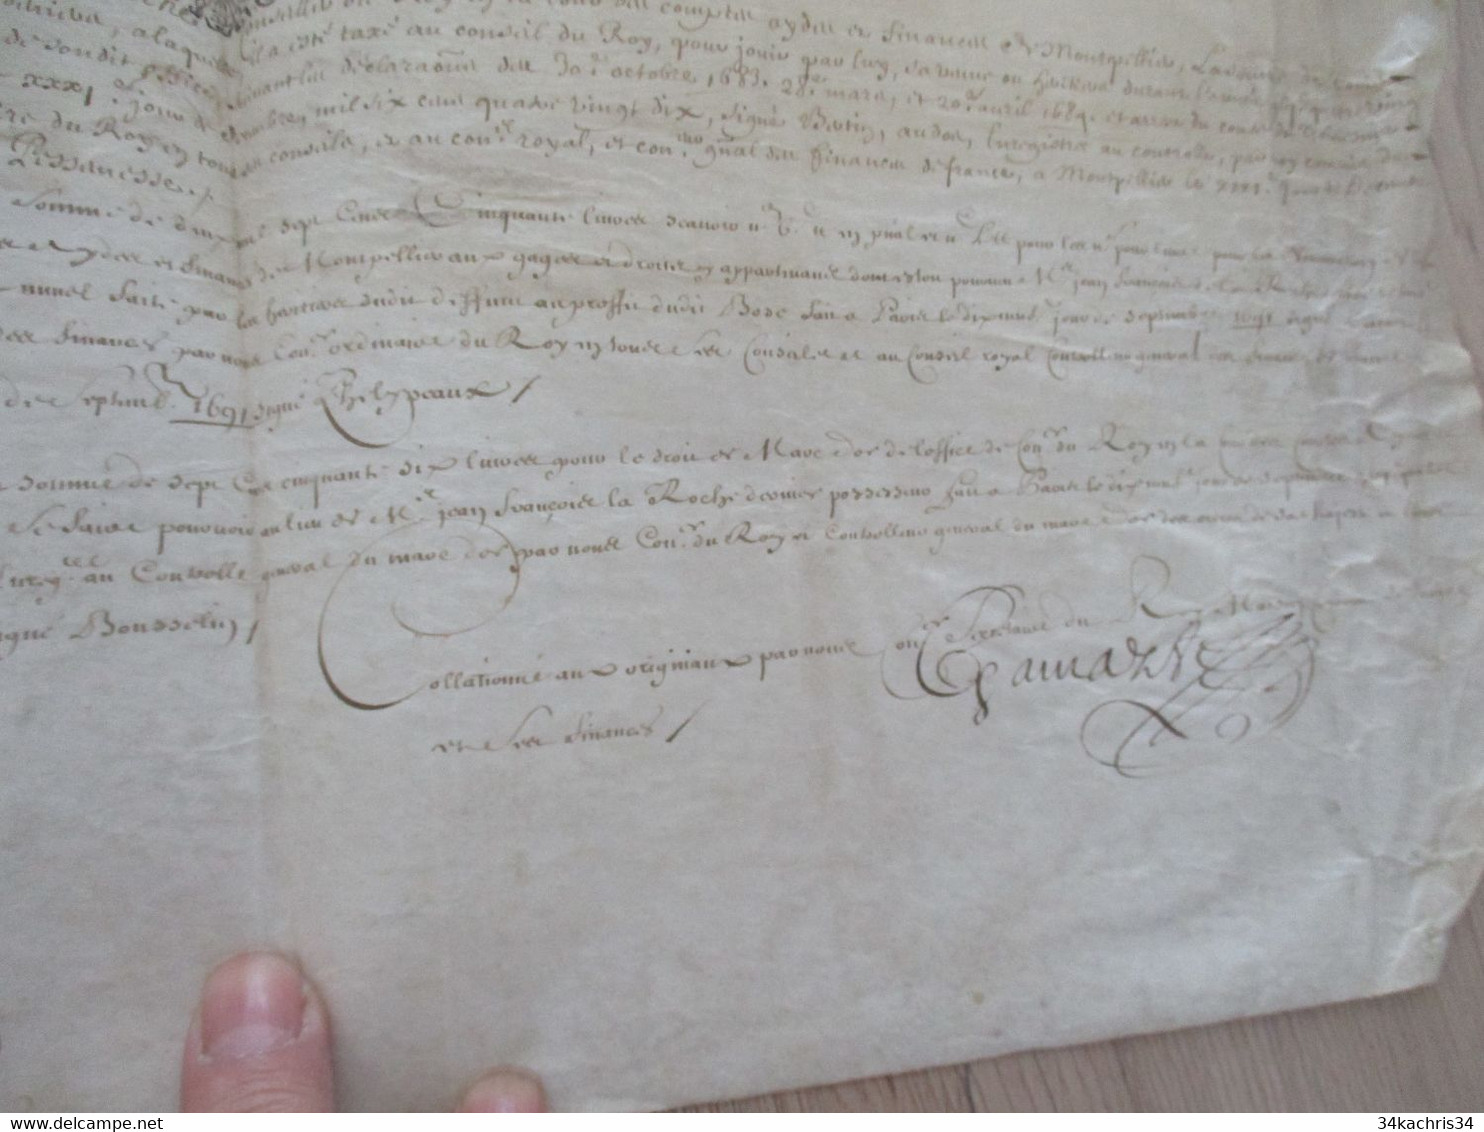 1691 Pièce signée sur velin Gamarze Fillipeaux Bousselin X 3 reçu par La Roche